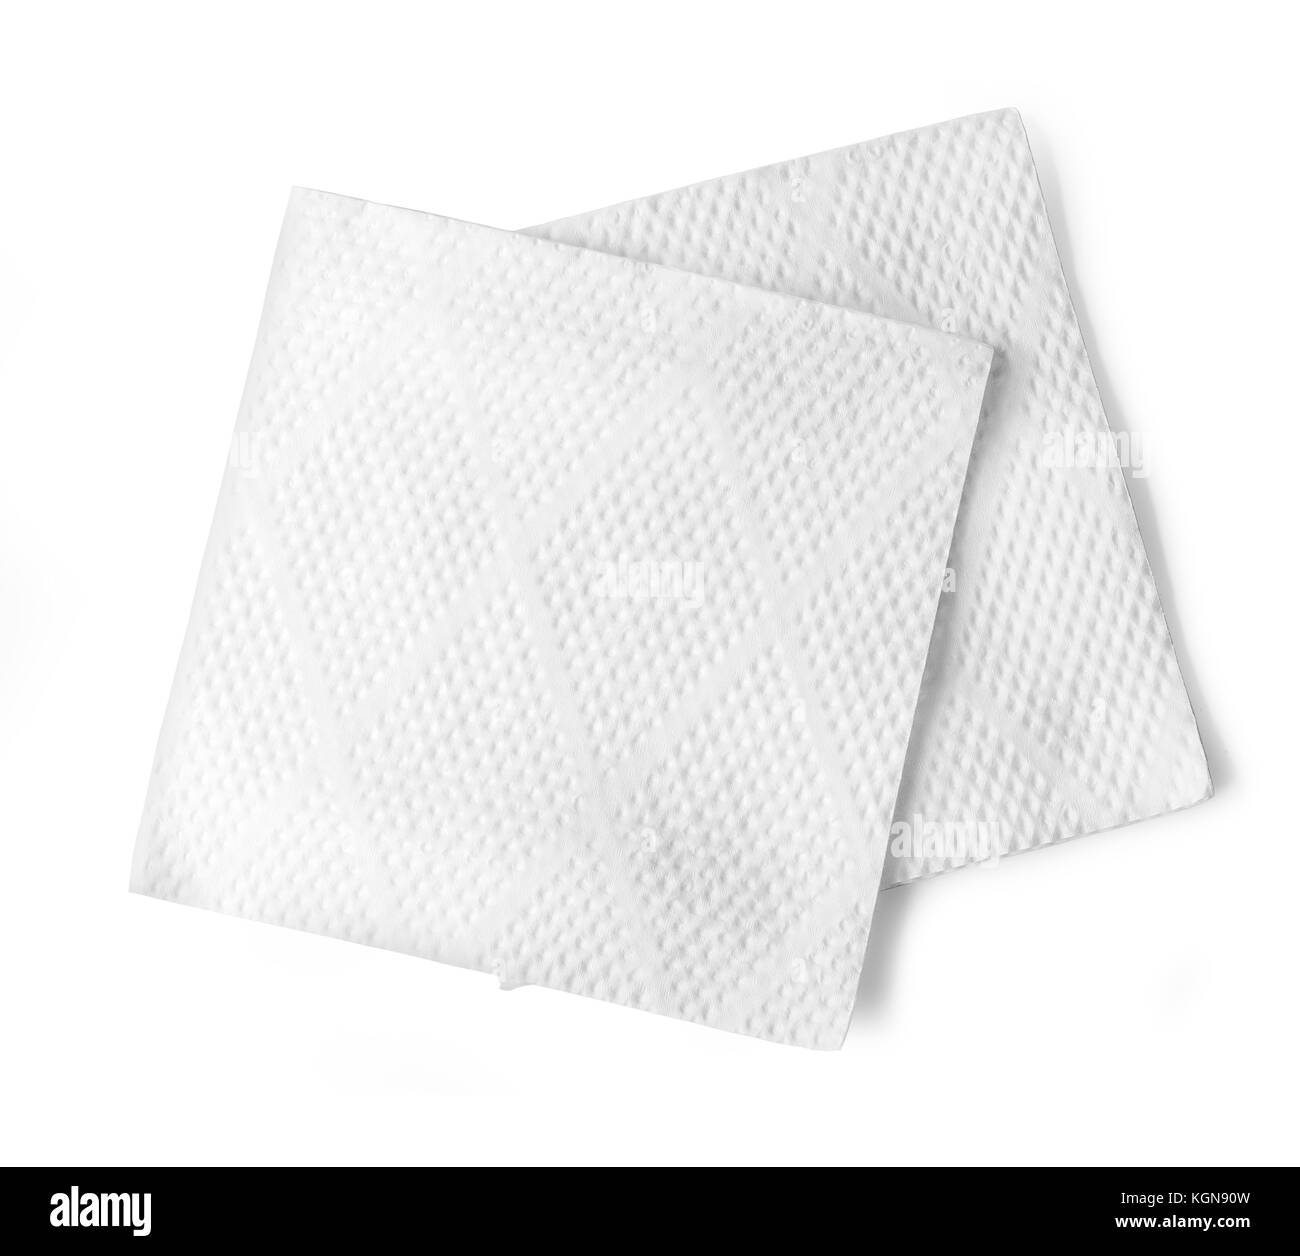 Blank tovagliolo di carta isolato su sfondo bianco con tracciato di ritaglio Foto Stock